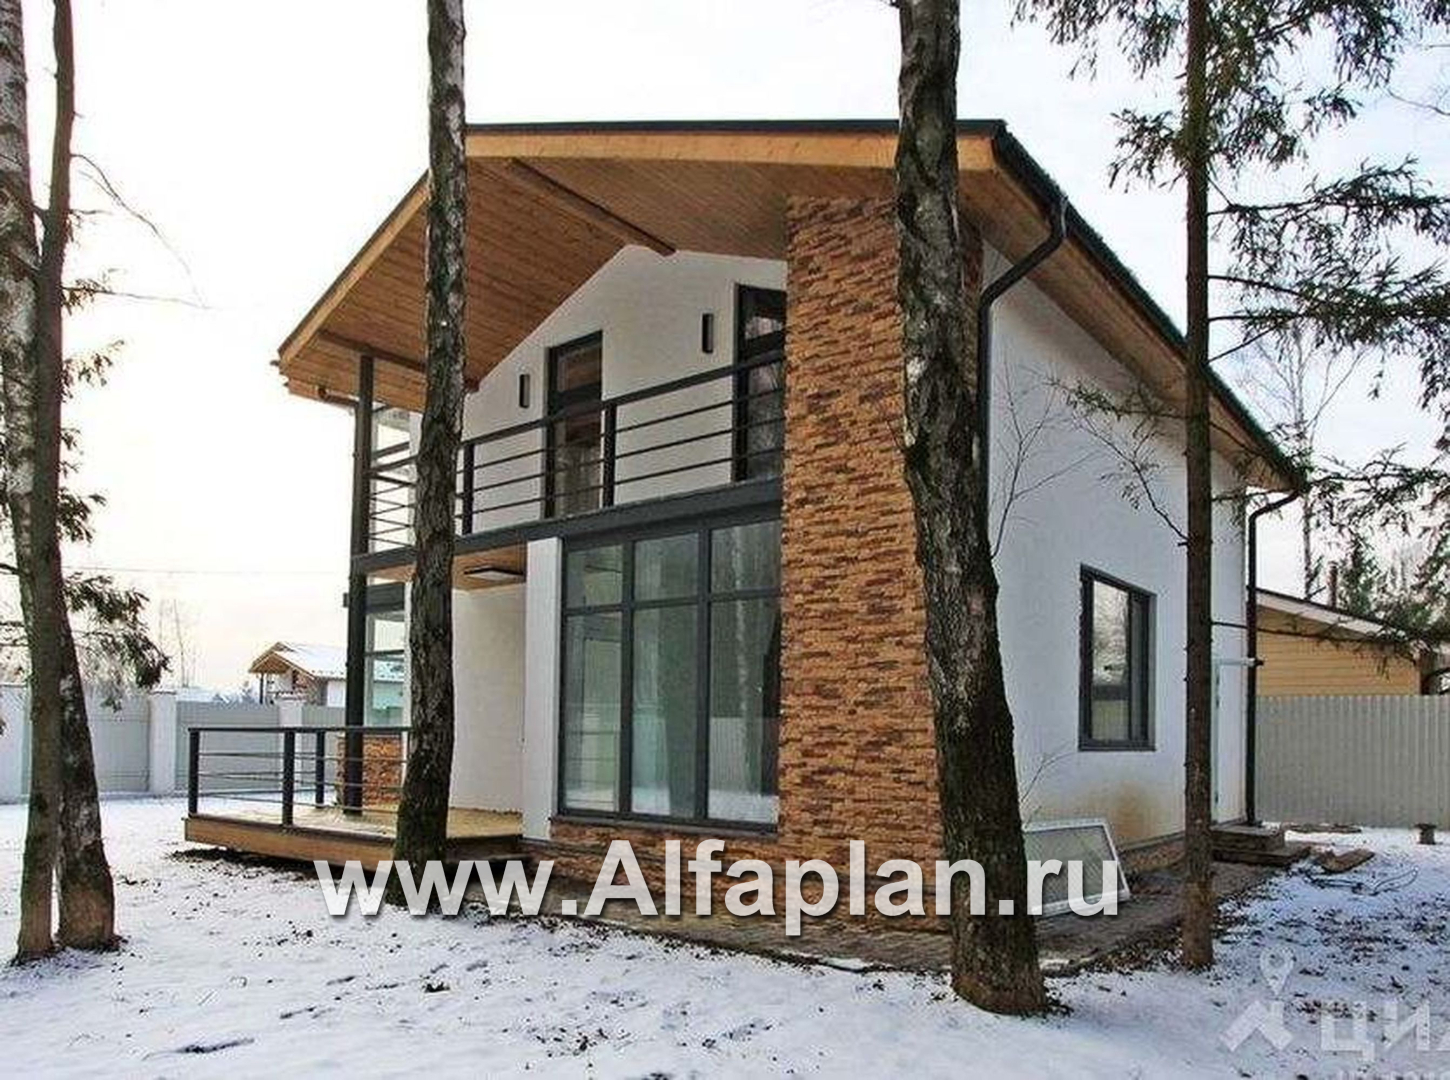 Проекты домов Альфаплан - Двухэтажный кирпичный коттедж с угловым витражом - дополнительное изображение №3